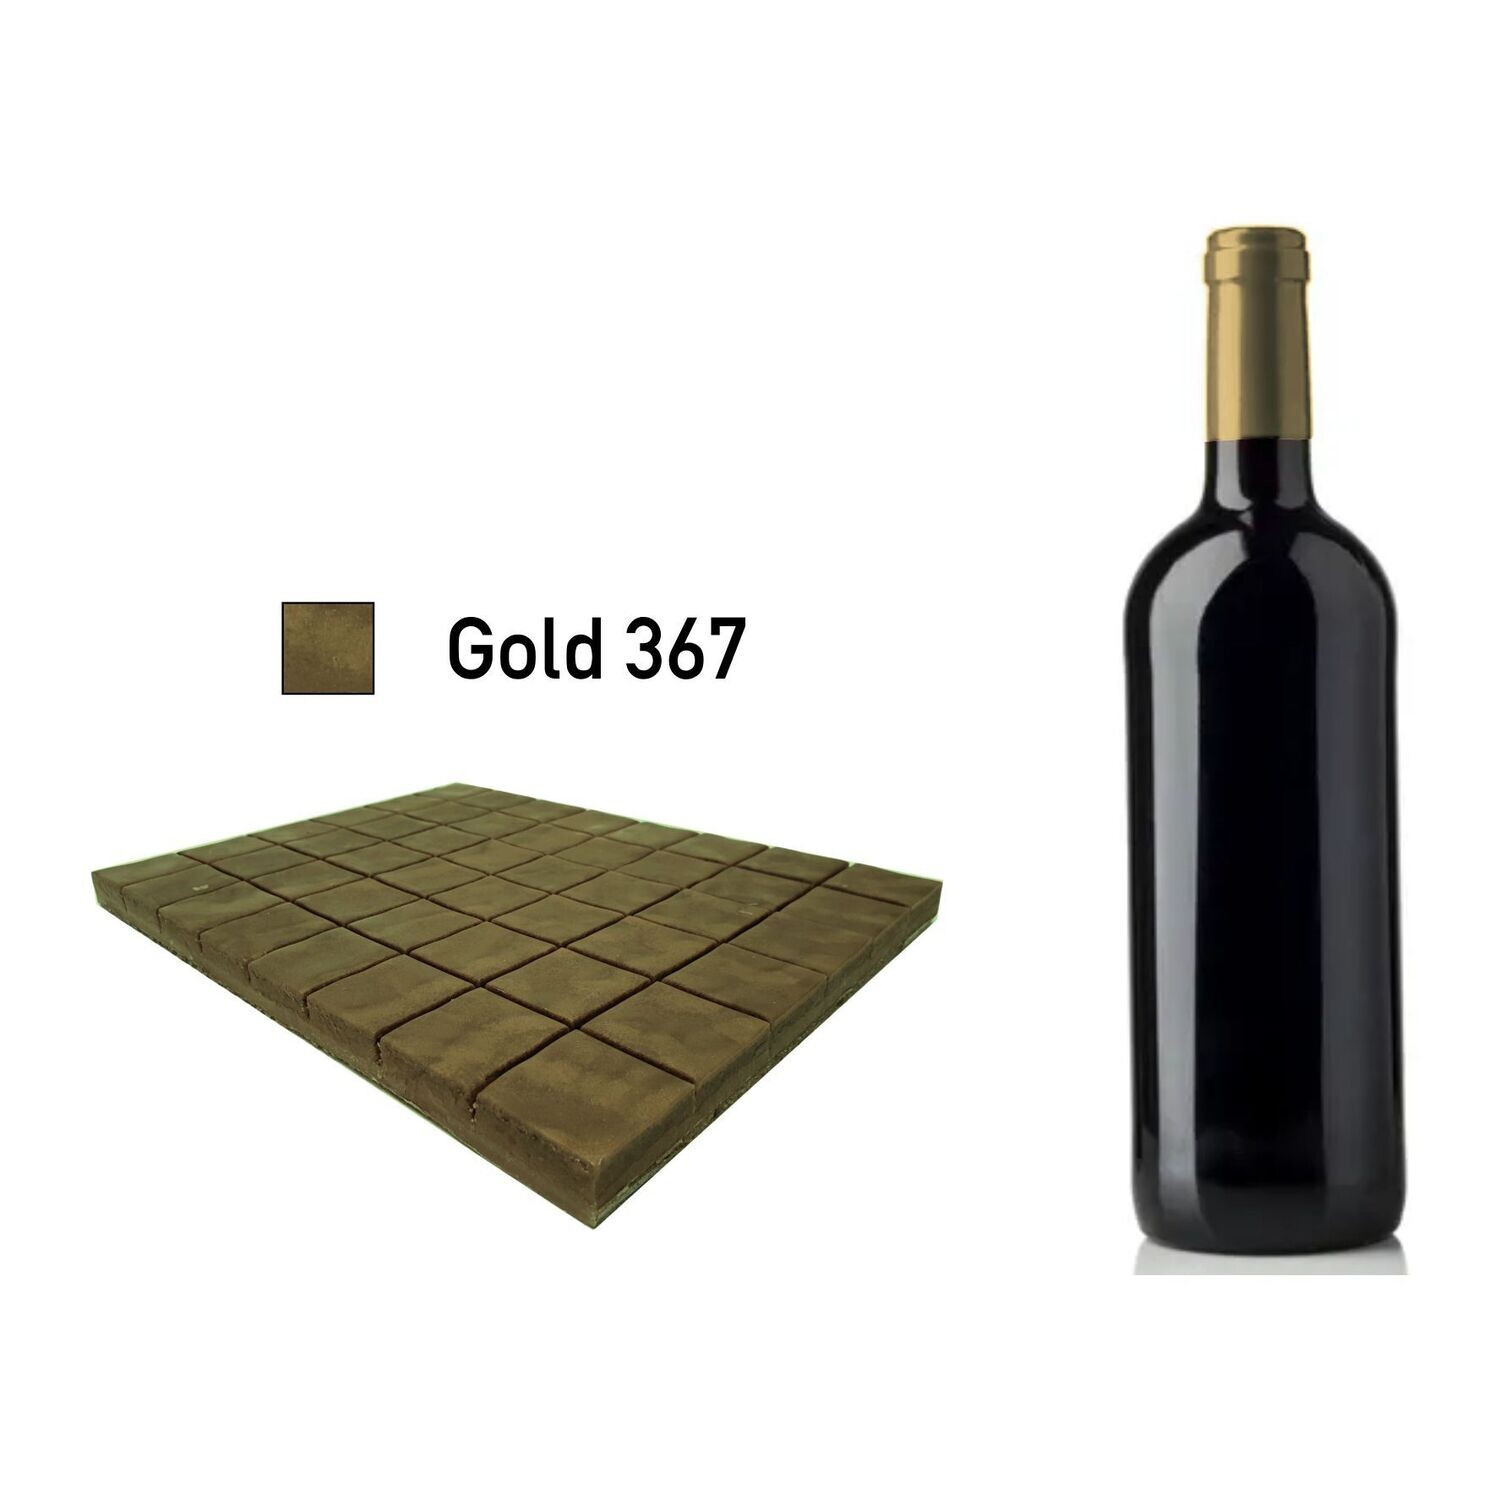 Siegelwachs für Flaschen - Gold 367 brilliant glänzend